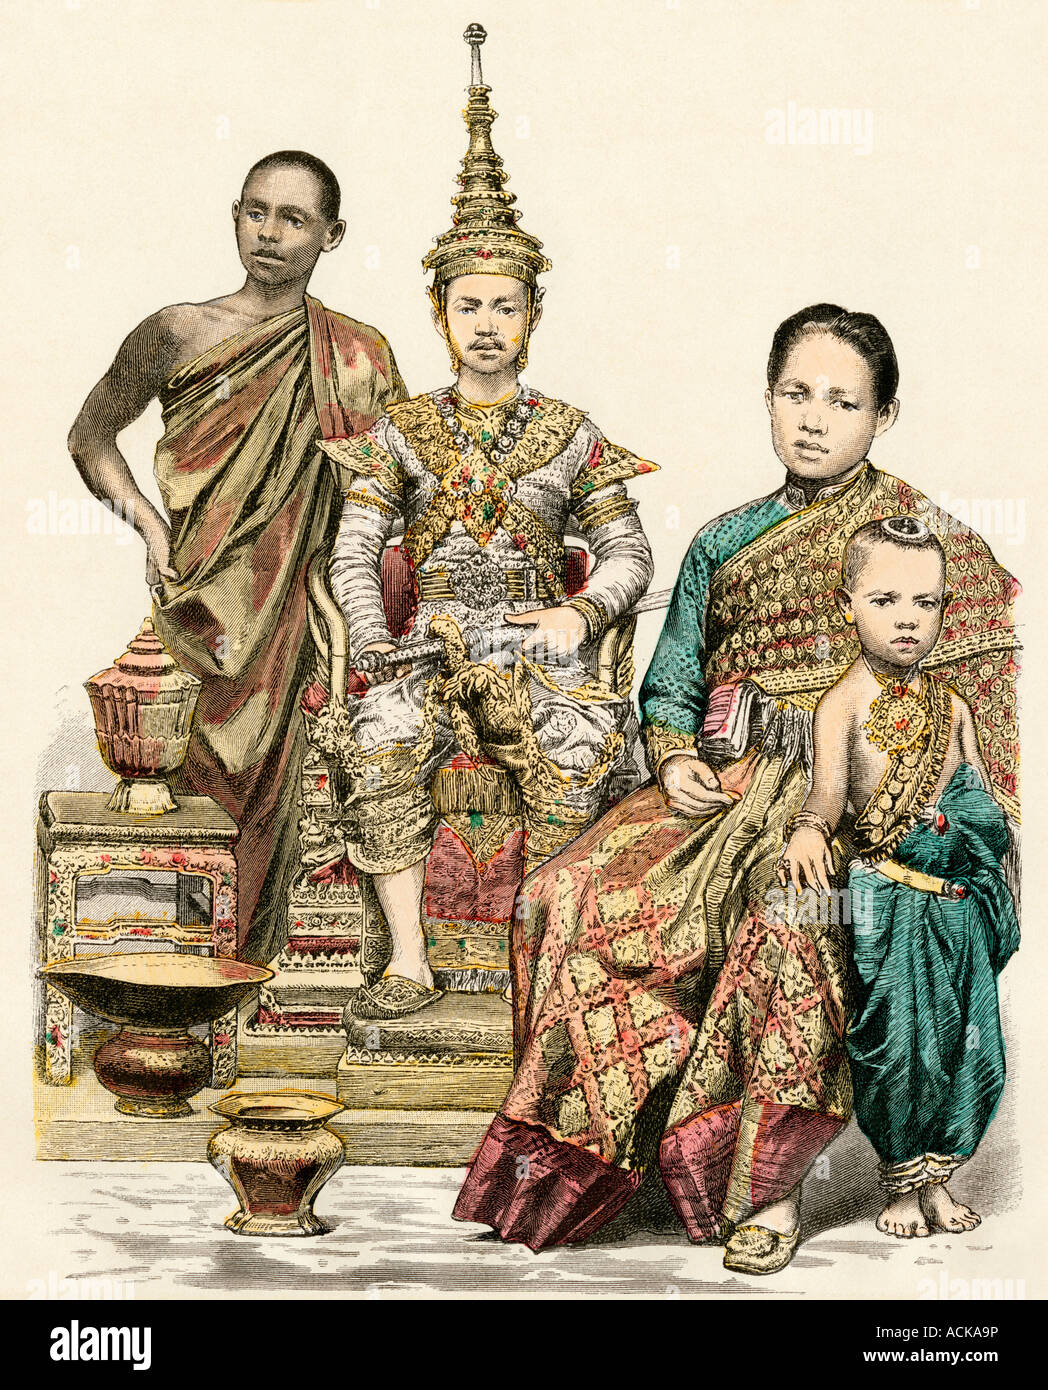 König und Königin der junge Prinz von Siam und ein buddhistischer Mönch 1800. Hand-farbig drucken Stockfoto